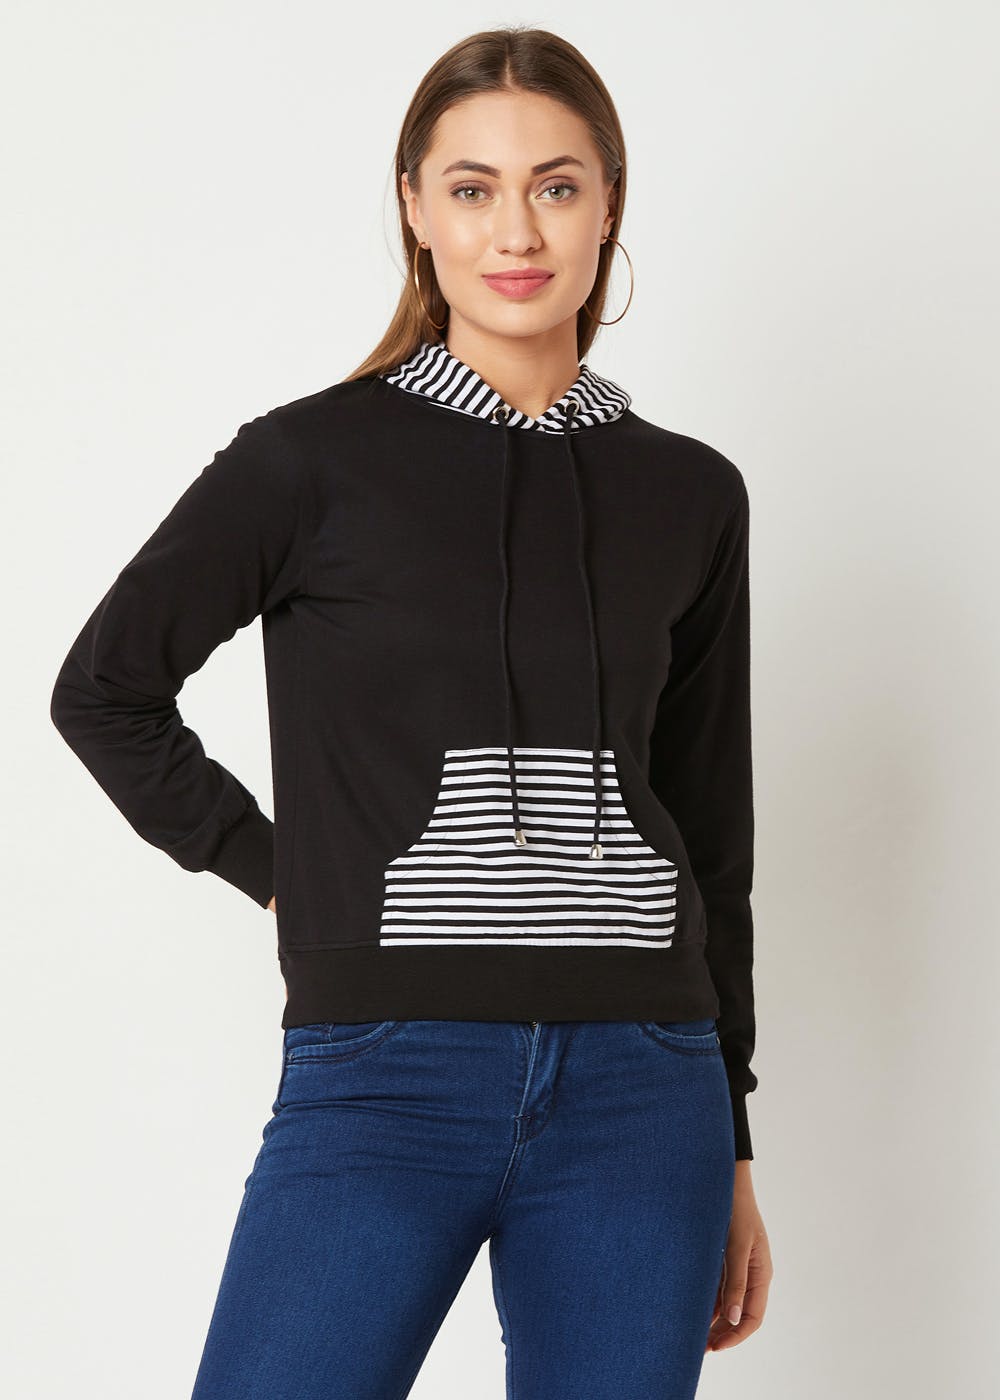 Striped Hoodie & Pocket Detail Black Sweatshirt